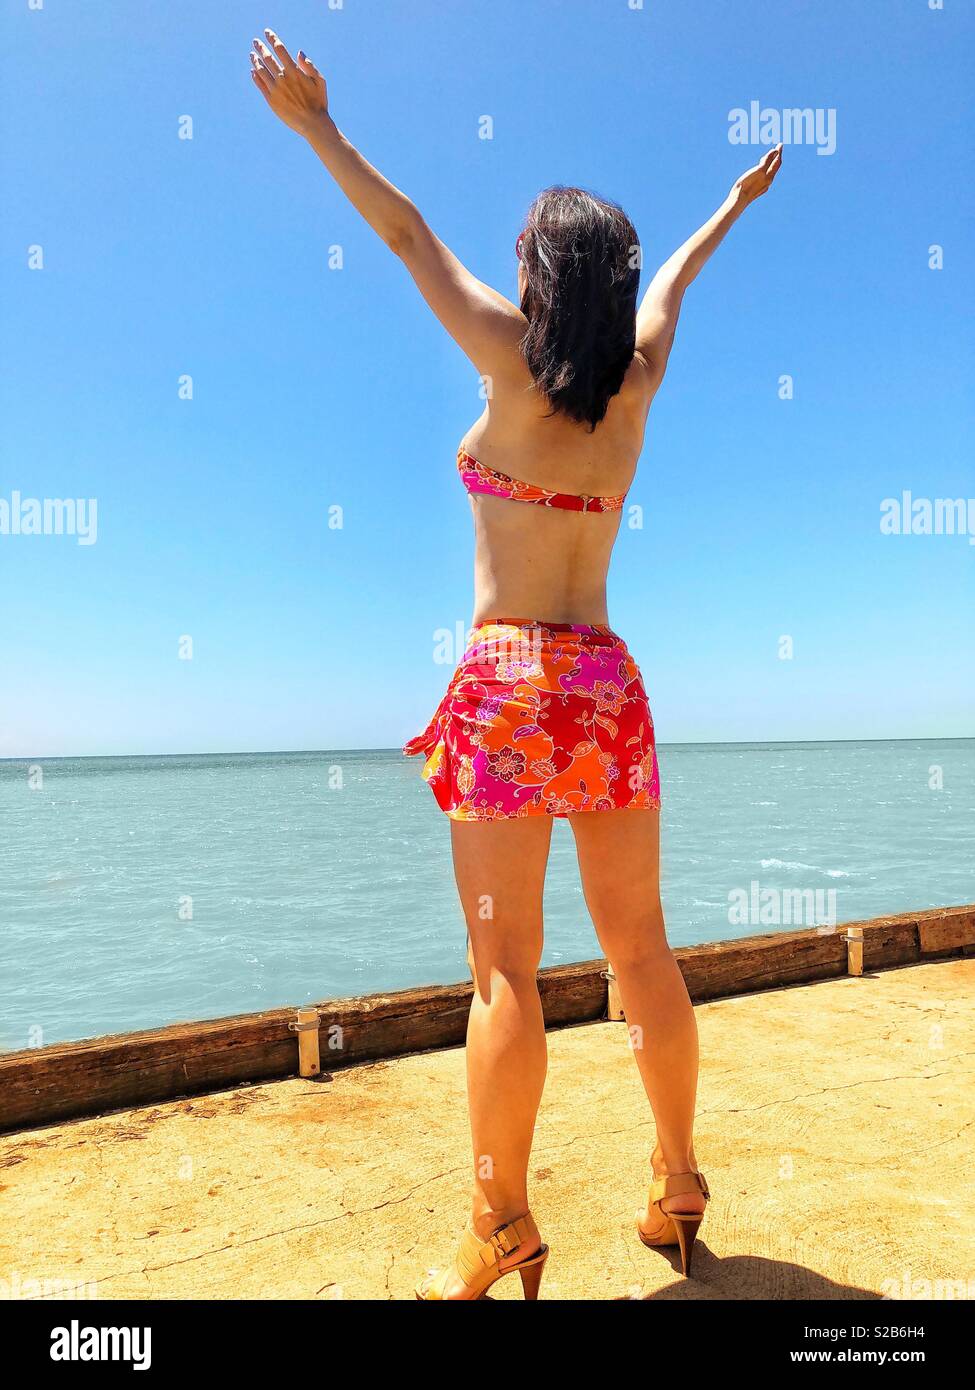 Junge brünette Frau in Floral Pink Bikini und paleo Rock umfasst die tropischen hawaiischen Insel Ufer am Ende der Pier auf einem hellen, sonnigen Tag im Paradies Stockfoto